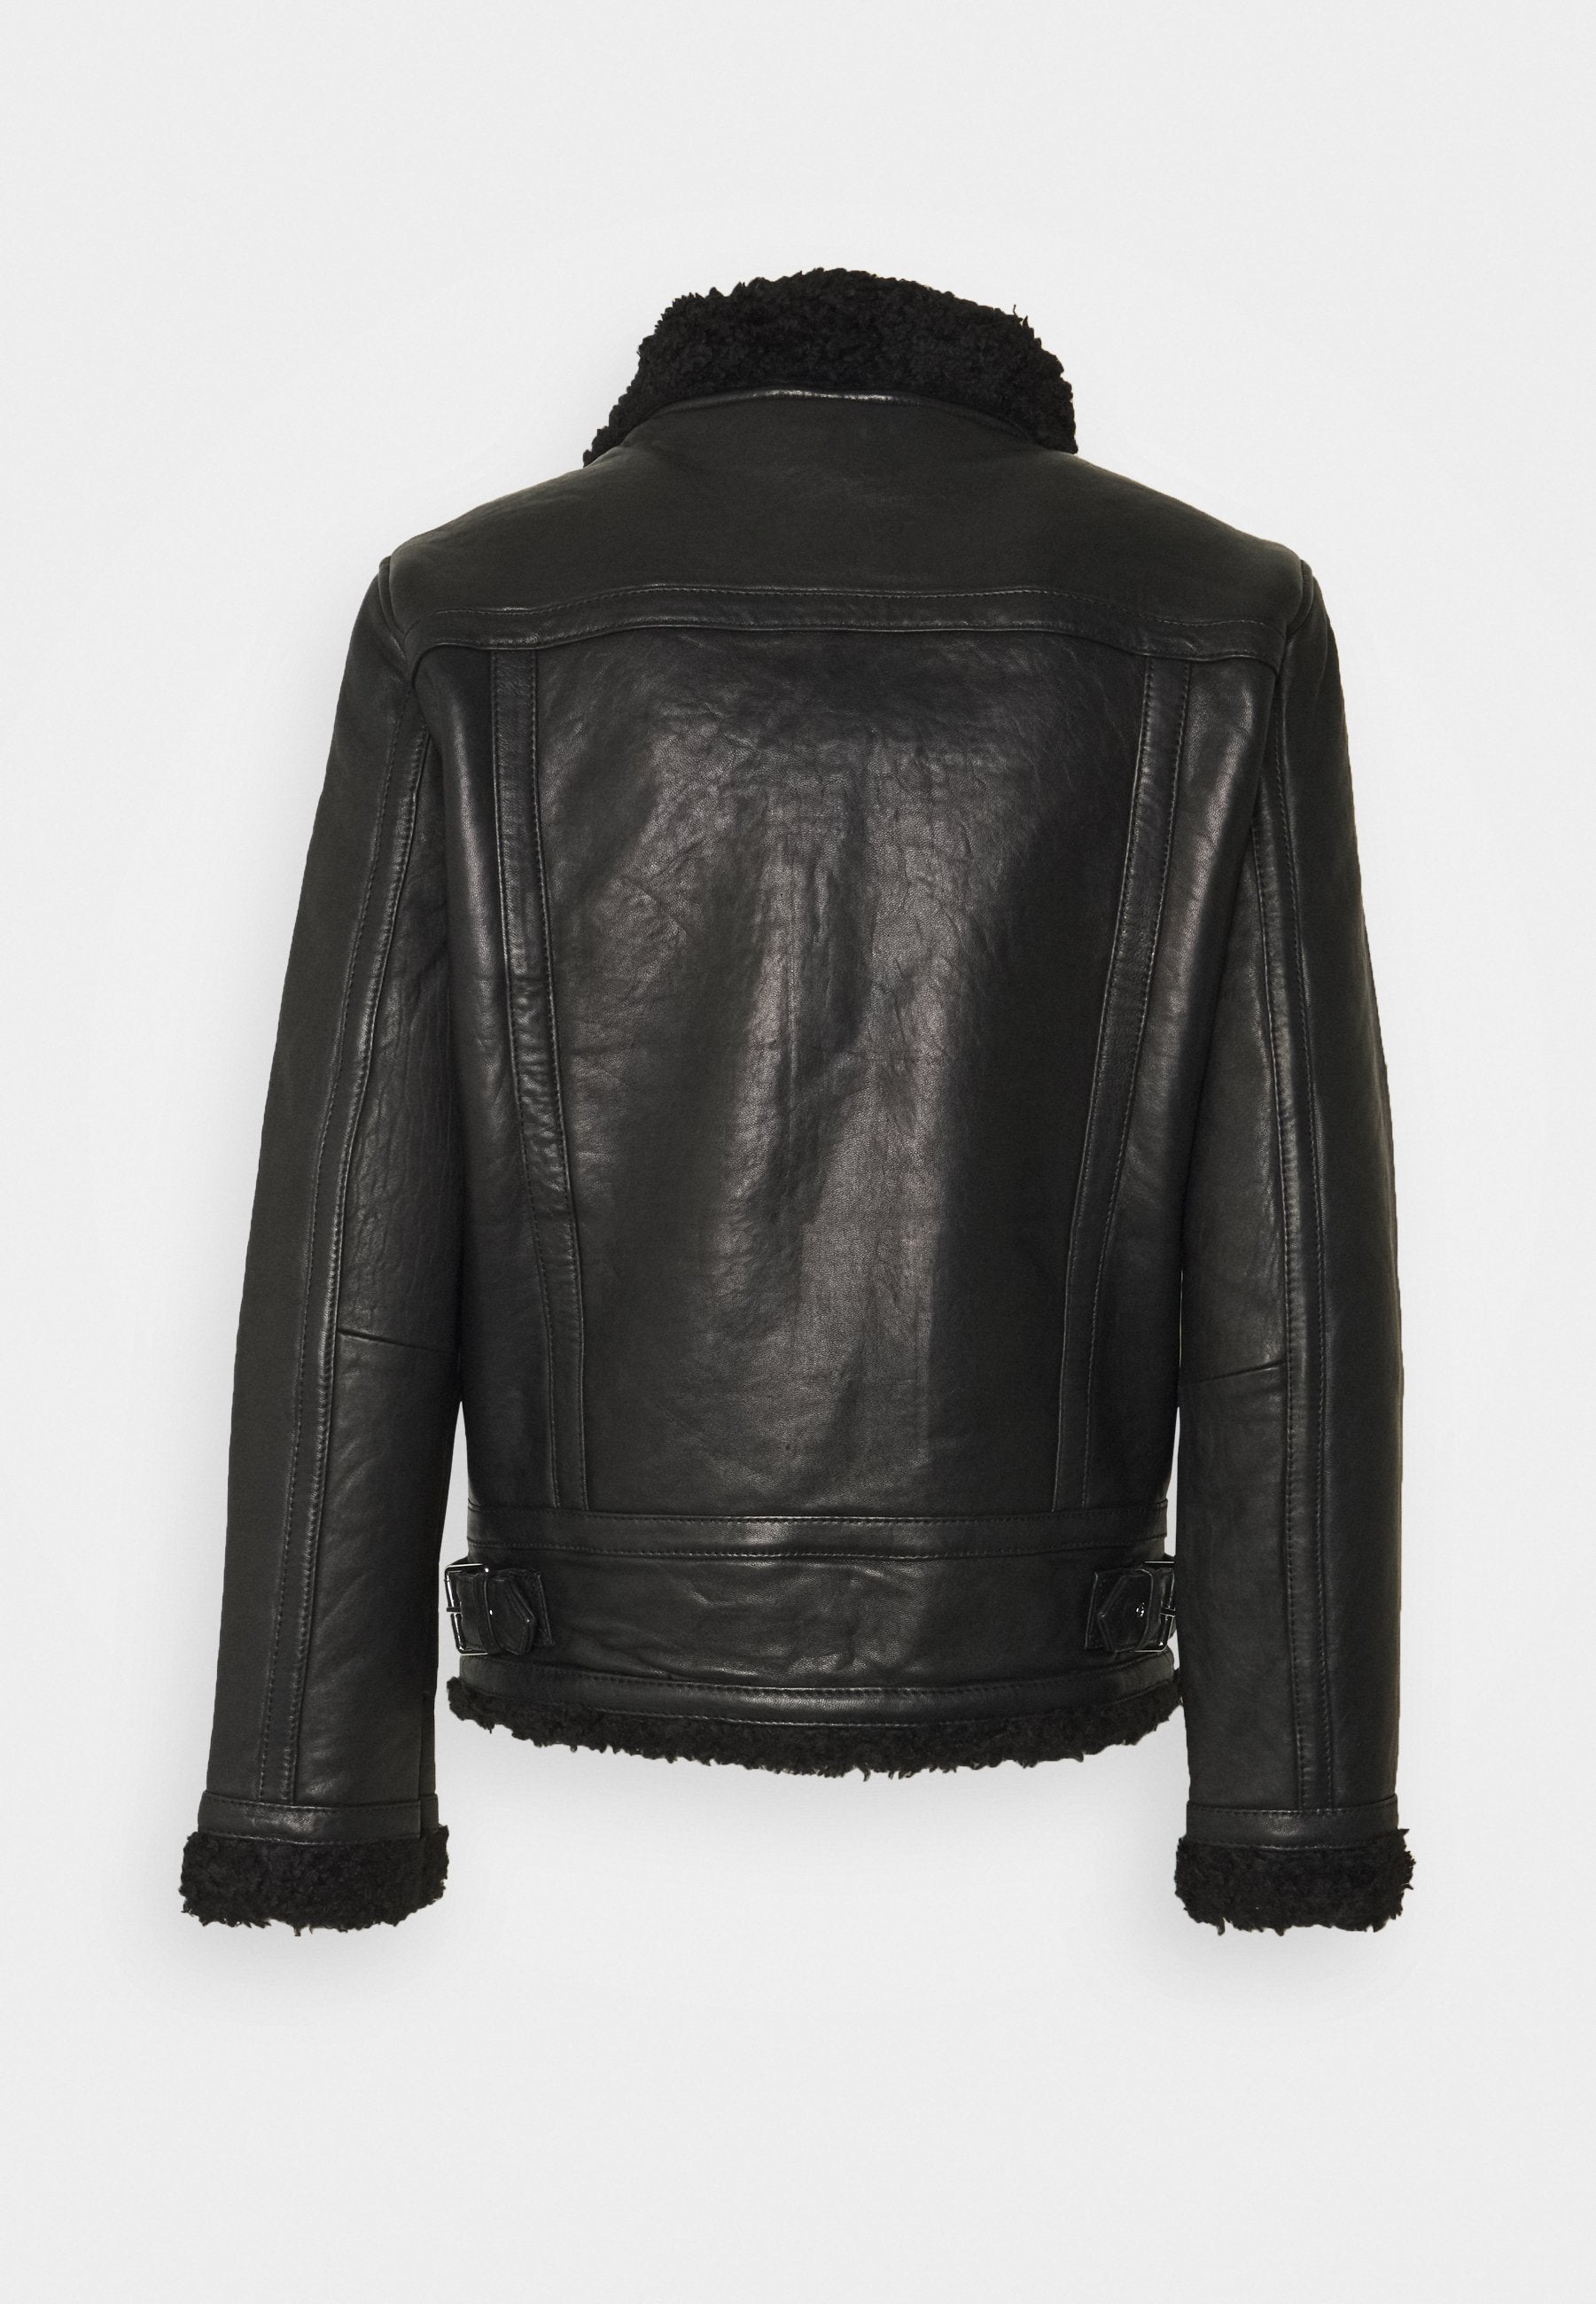 Men's Black Leather Black Shearling Jacket